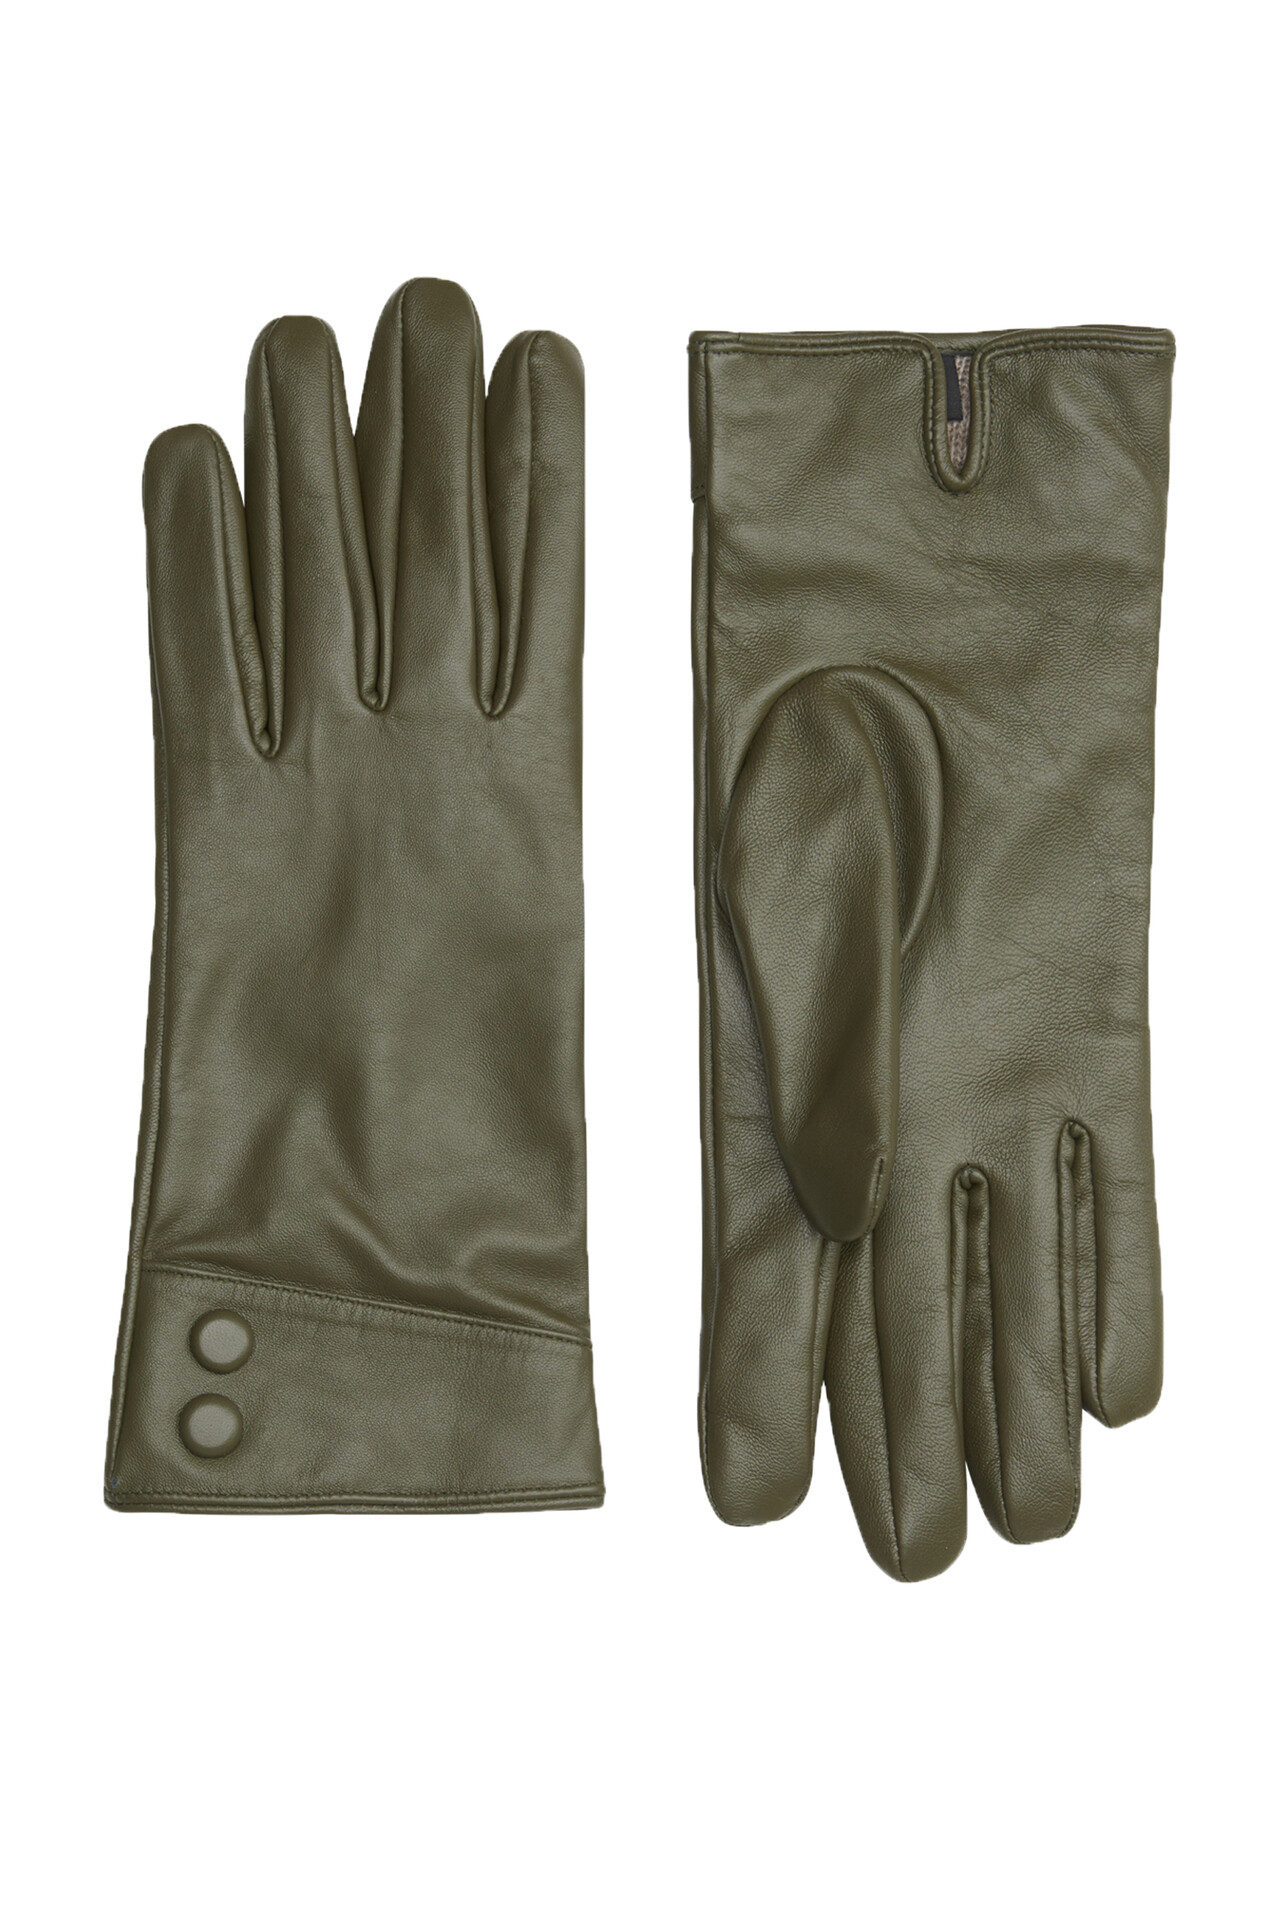 CRÉTON CRAGala handsker (OLIVE GREEN 7,5)